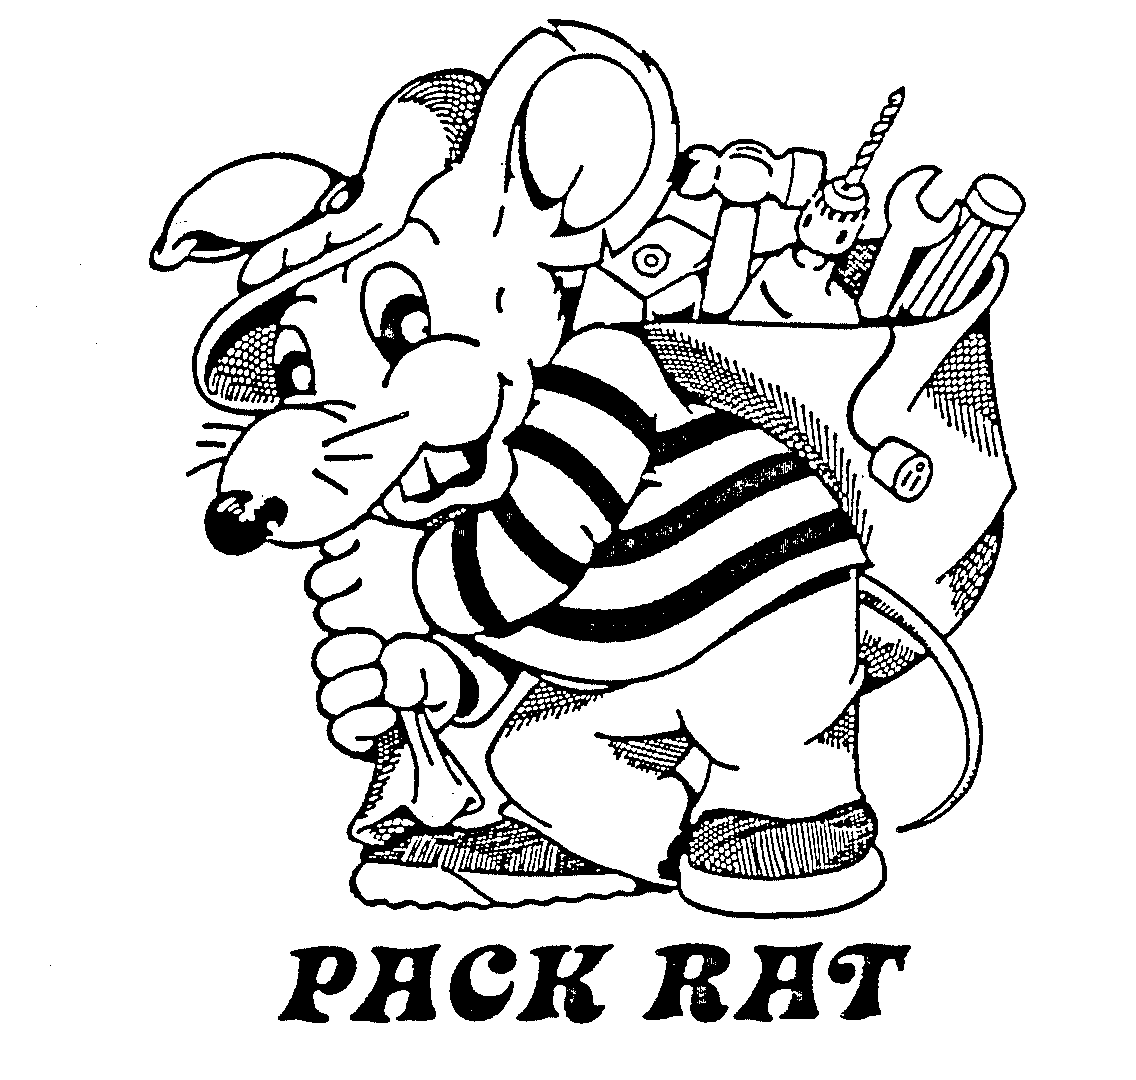  PACK RAT